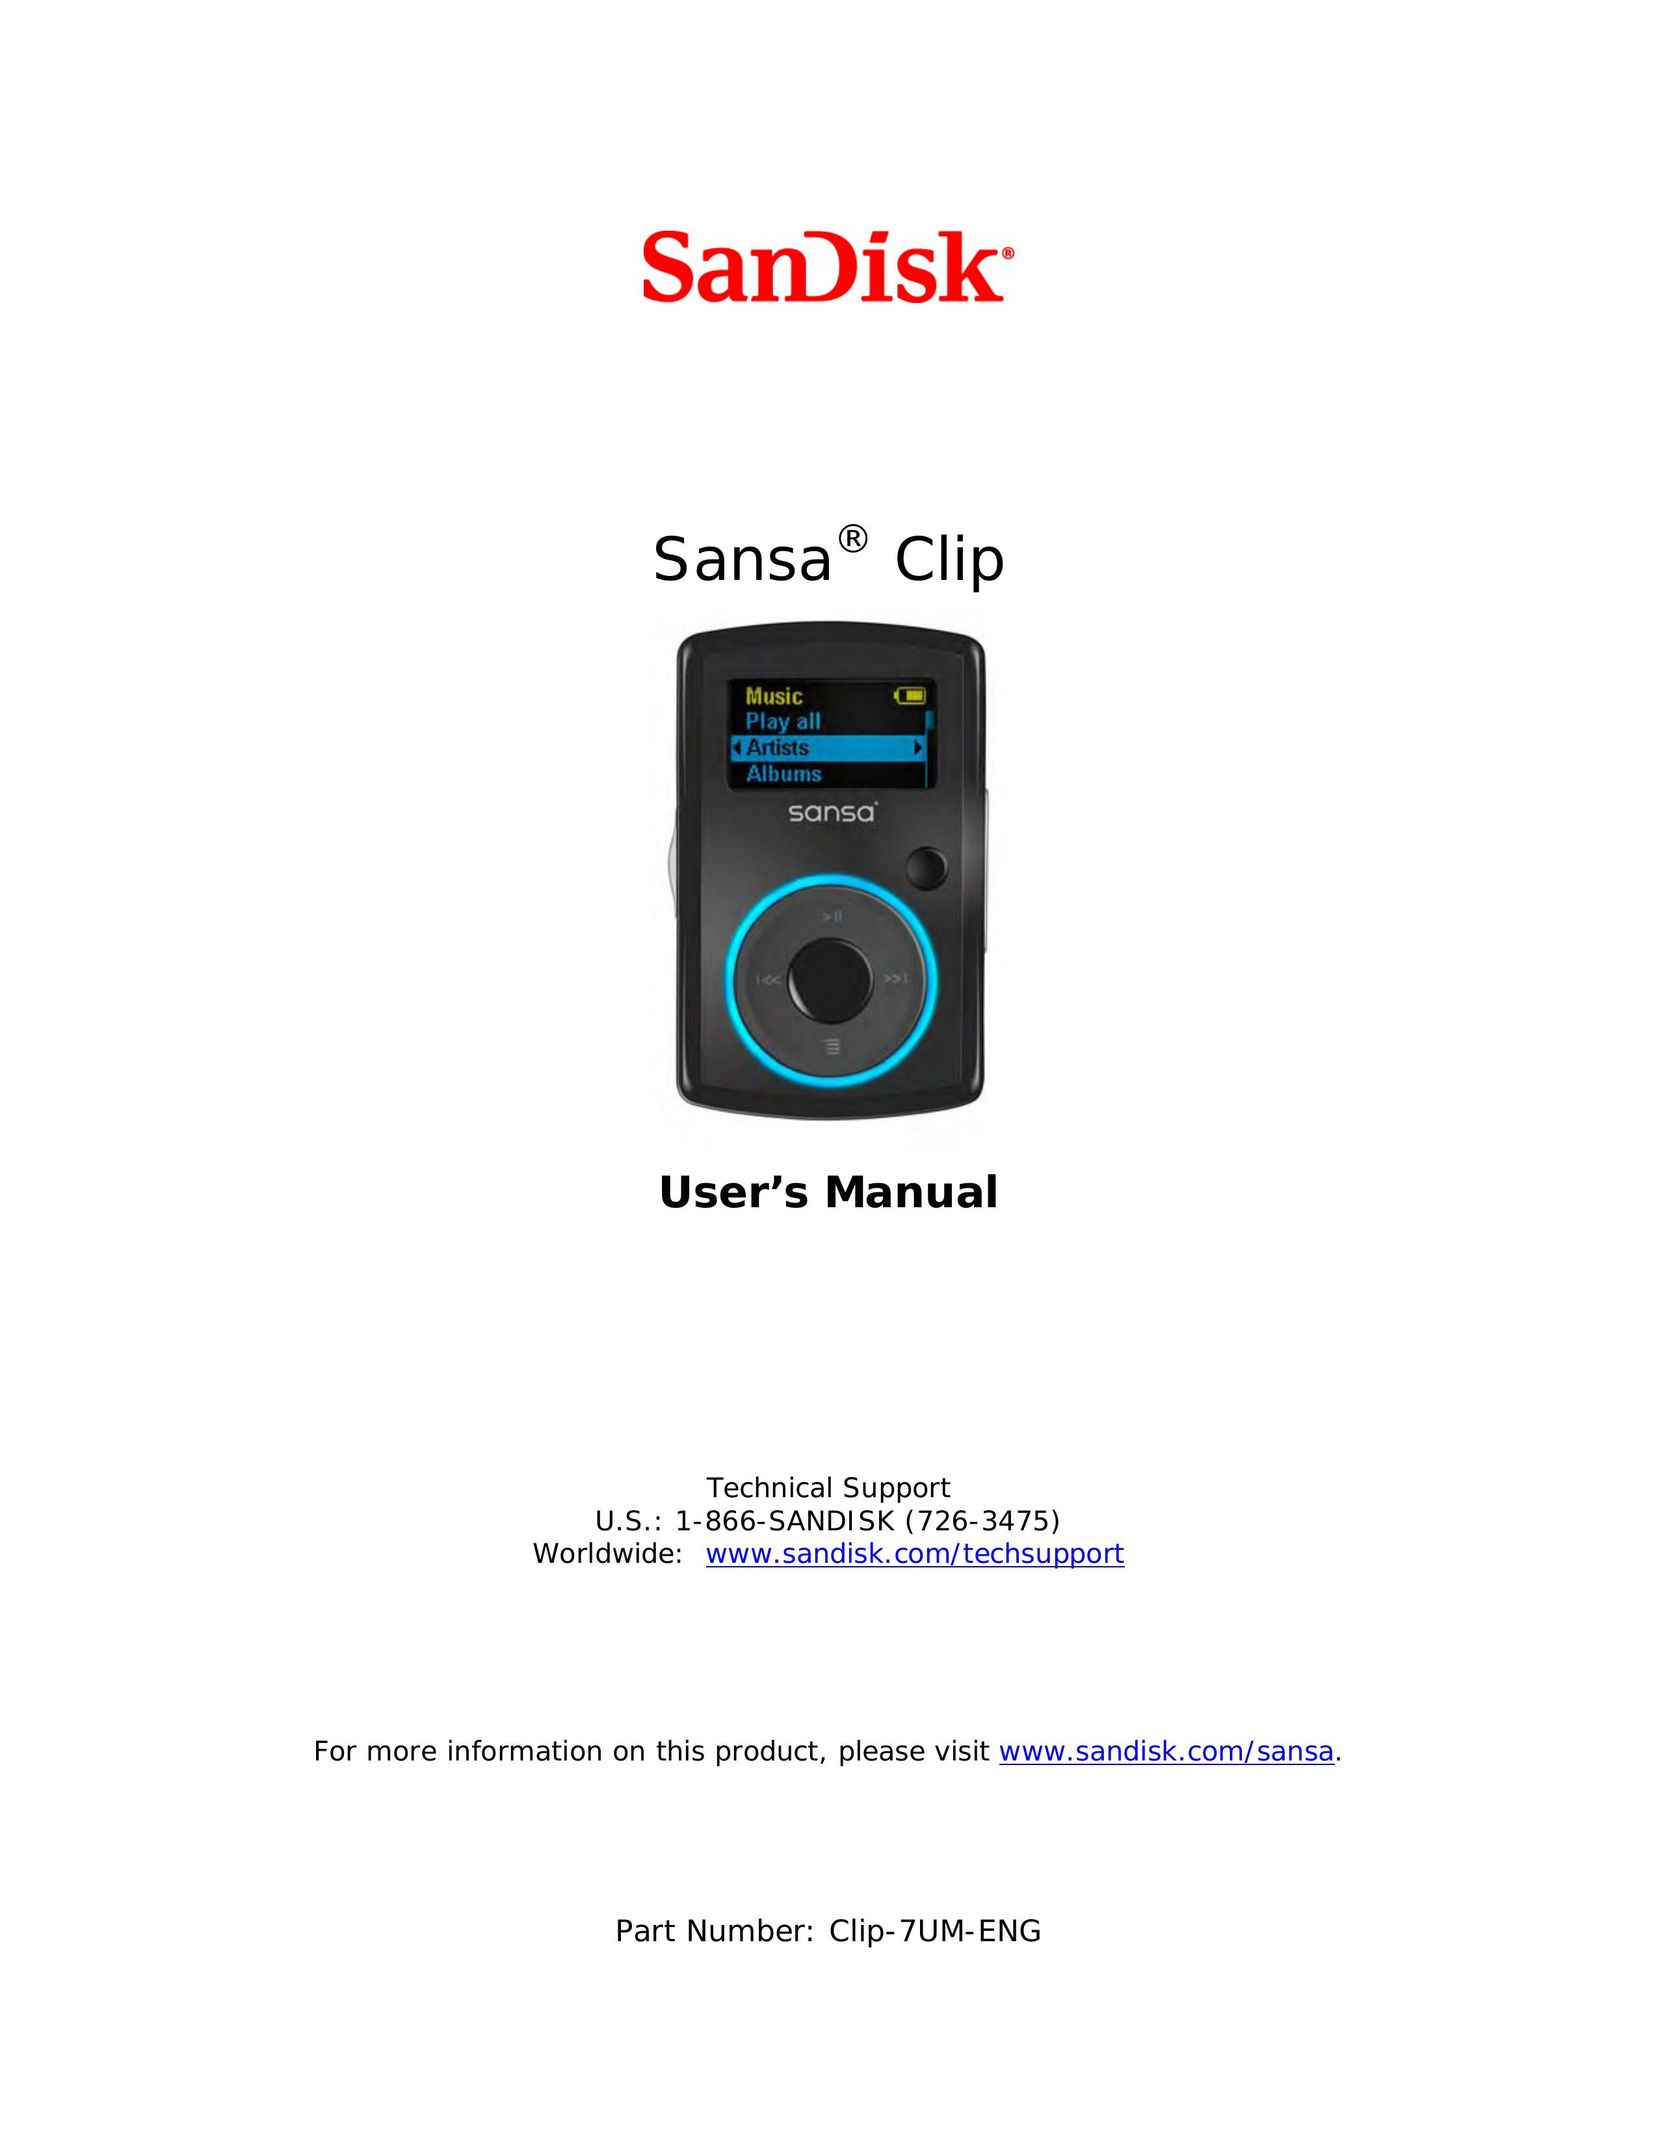 SanDisk CLIP-7UM-ENG MP3 Player User Manual